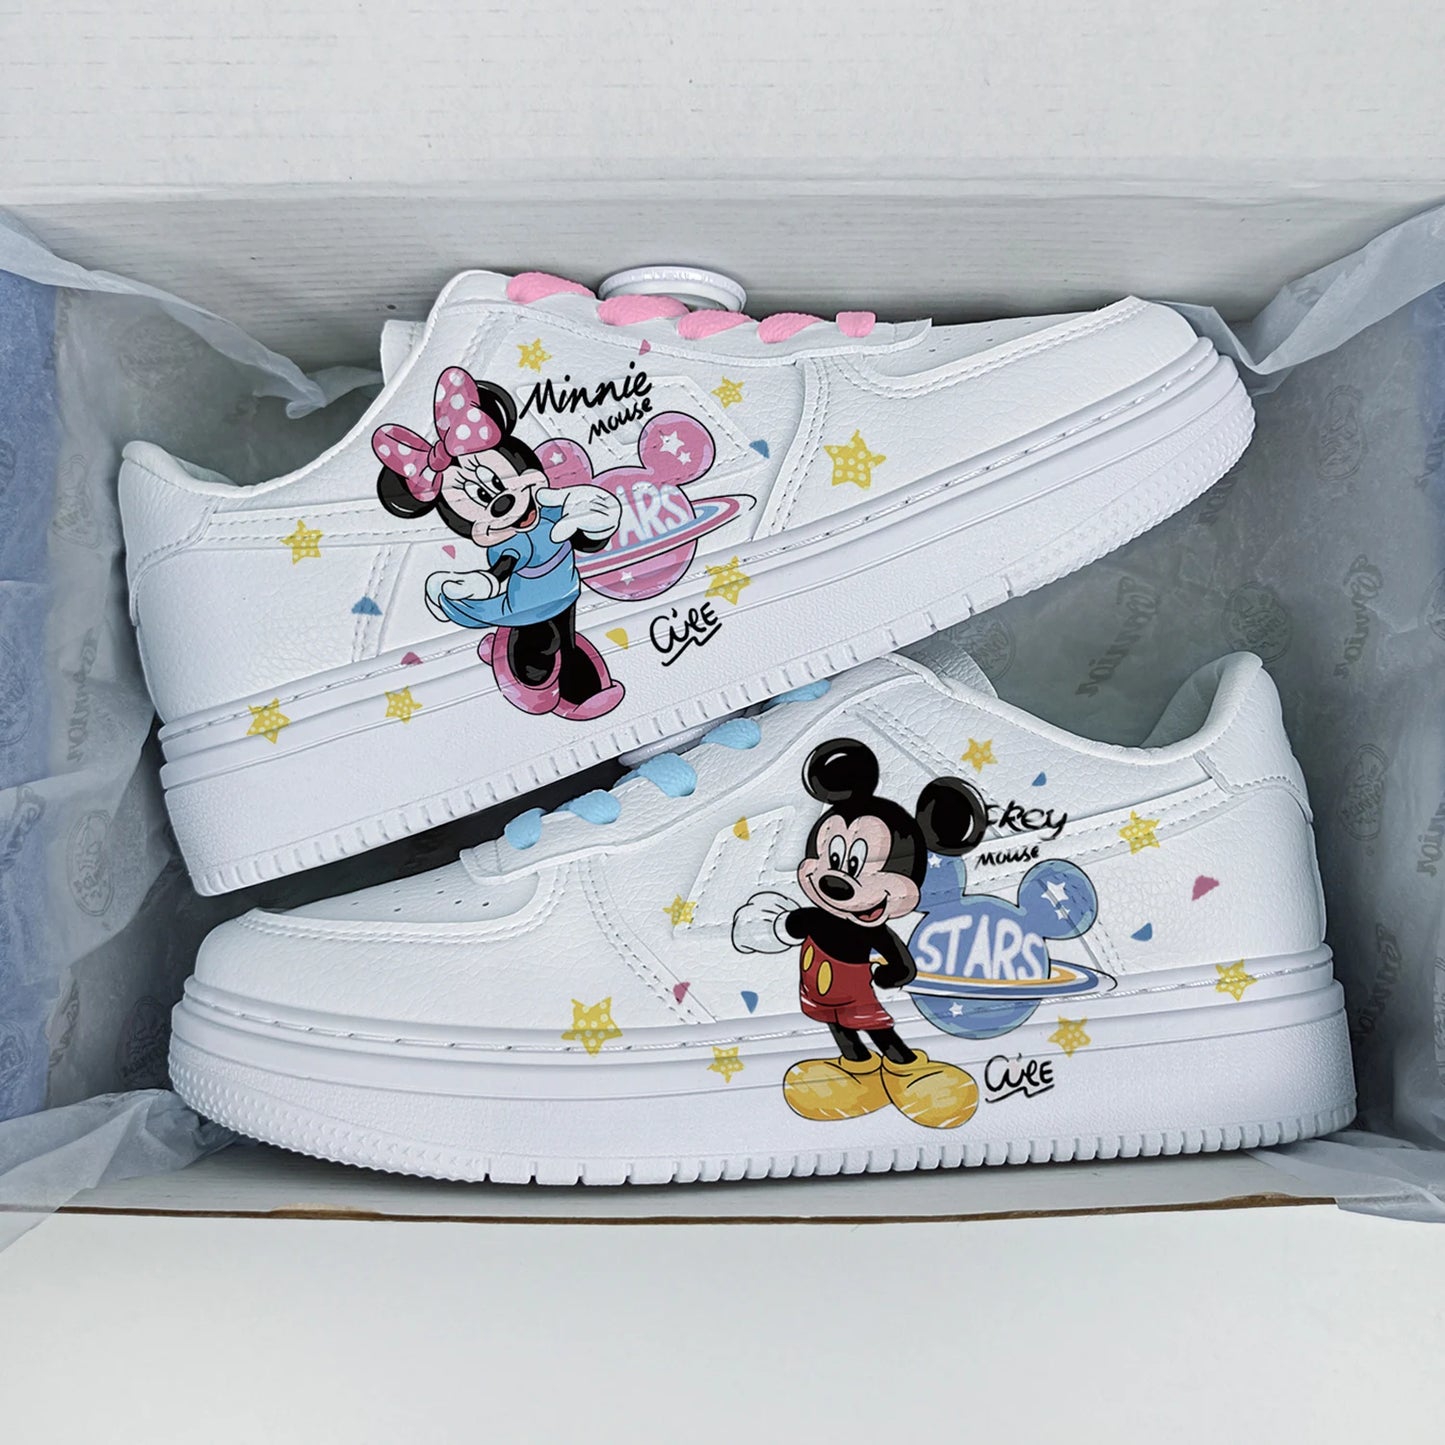 Süße Minnie Mouse Princess Casual rutschfeste Schuhe